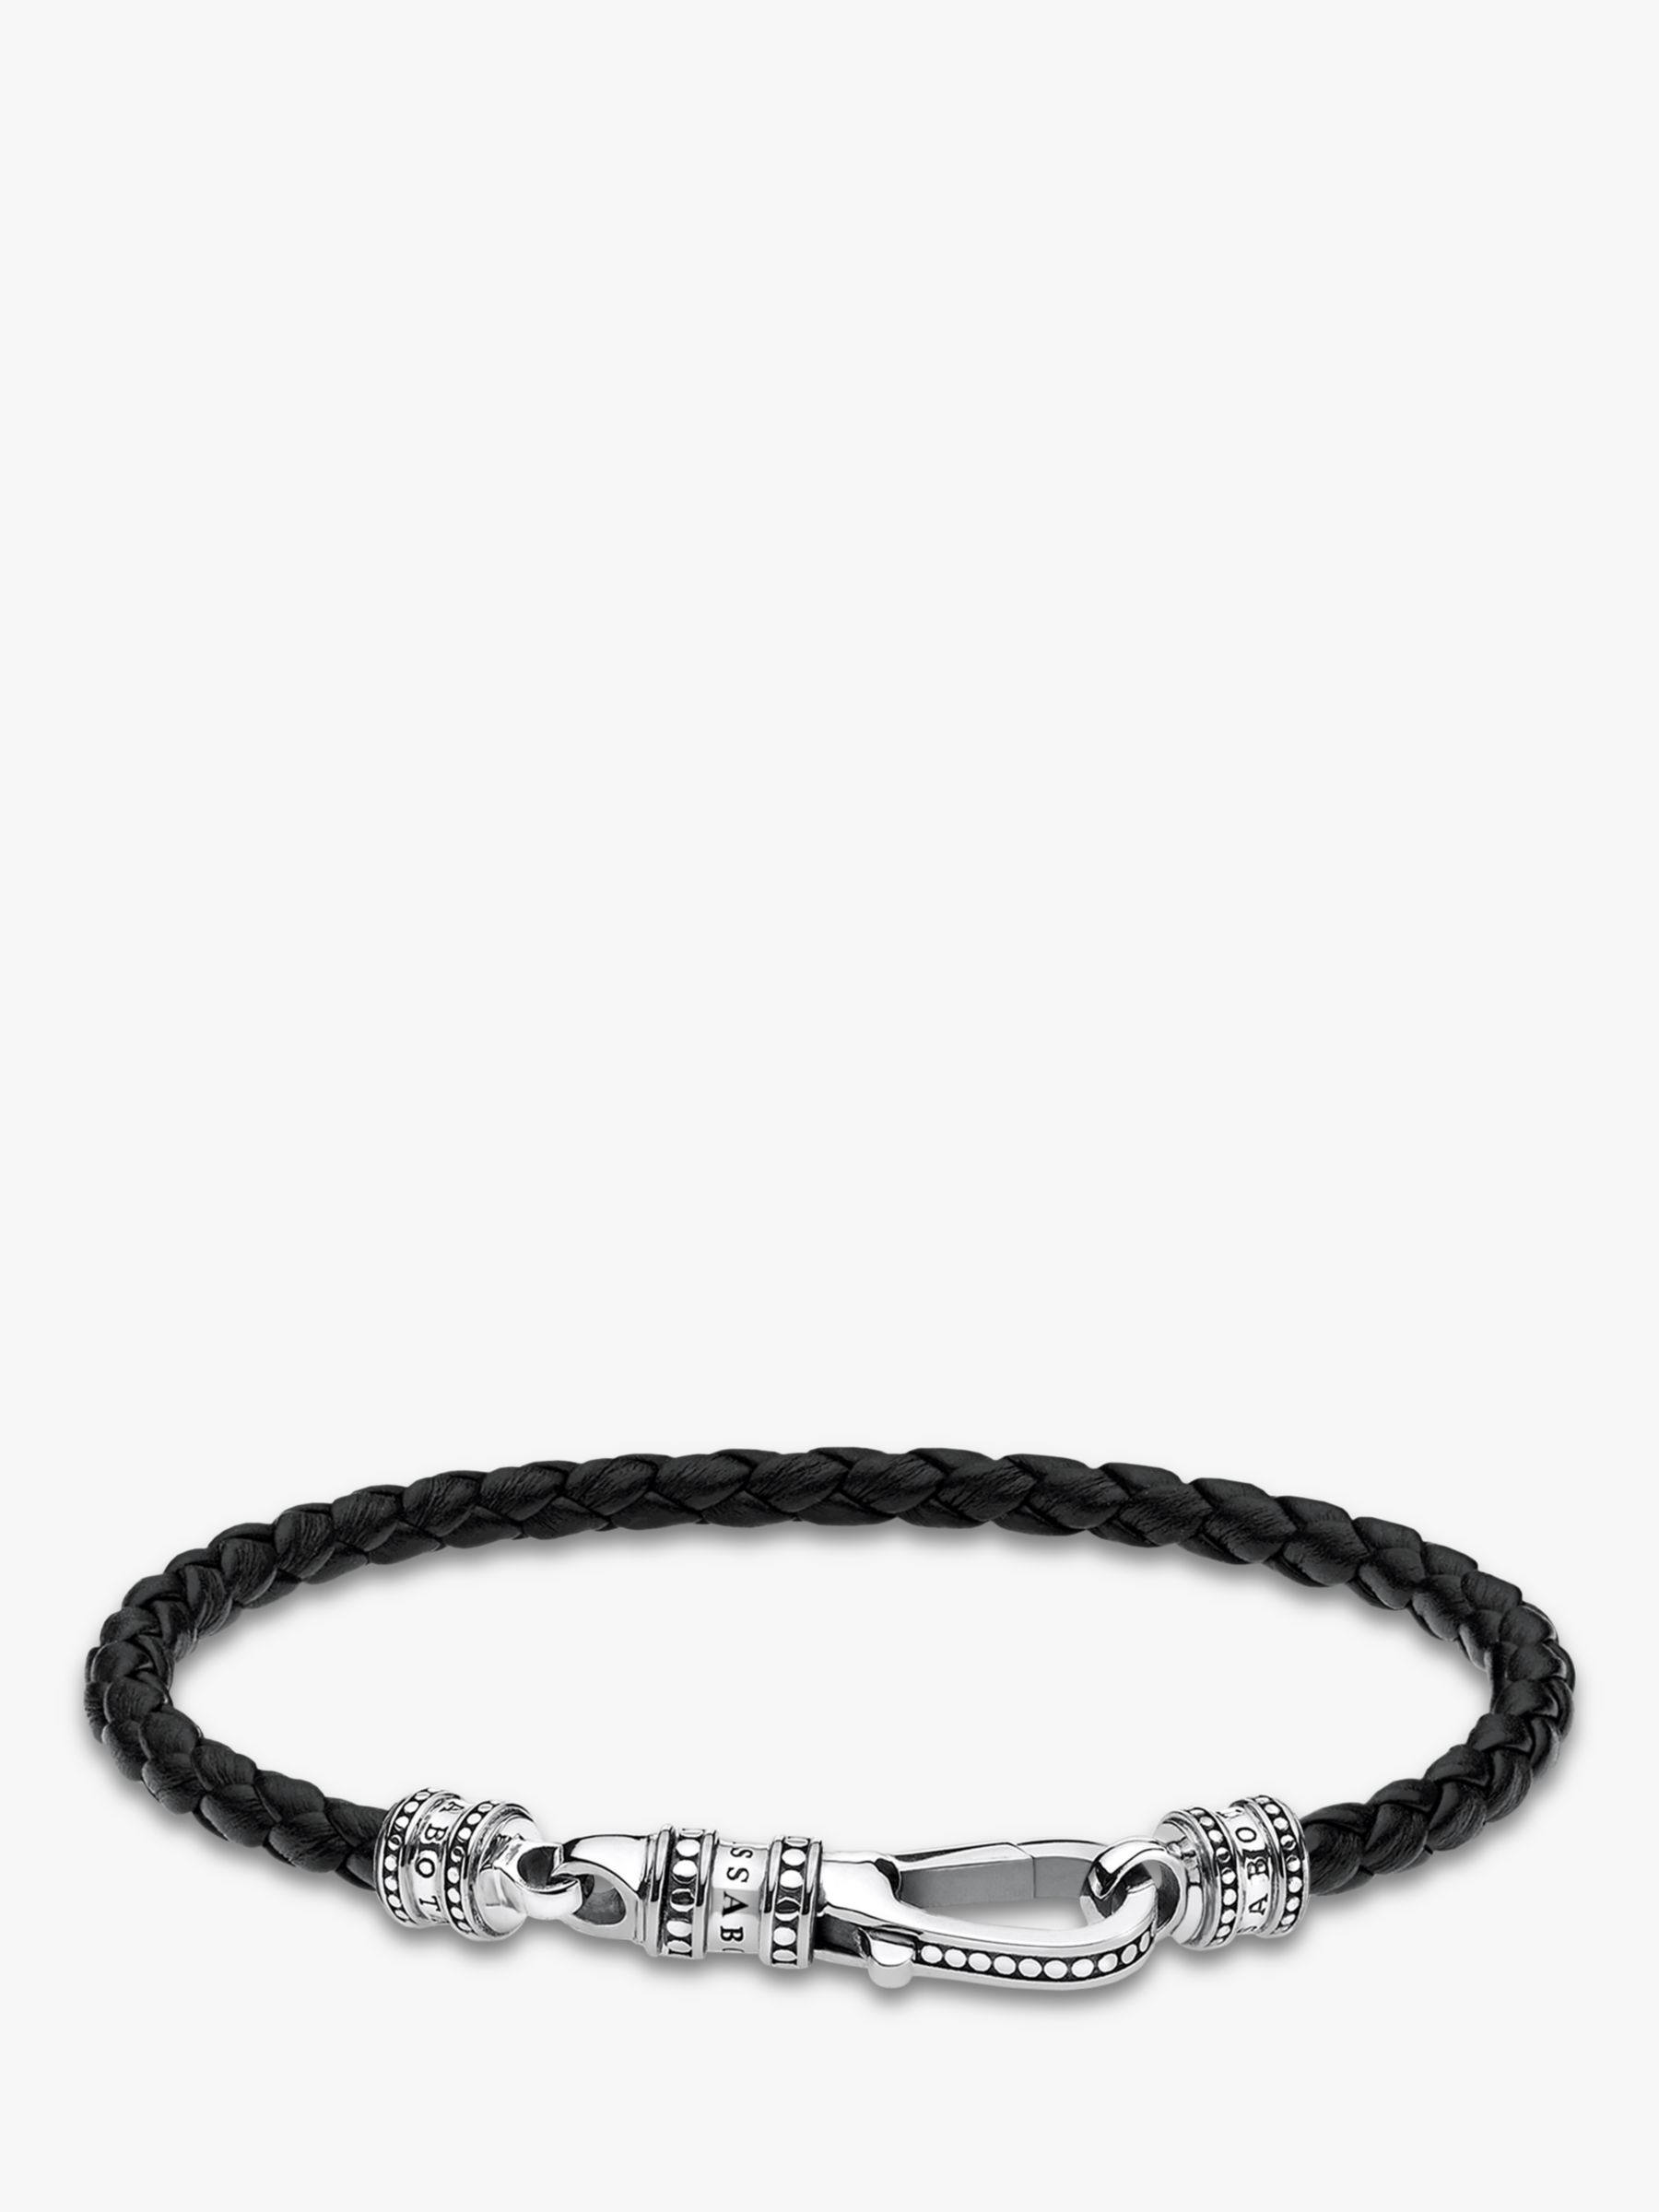 THOMAS SABO Men's Rebel Woven Leather Bracelet, Black/Silver